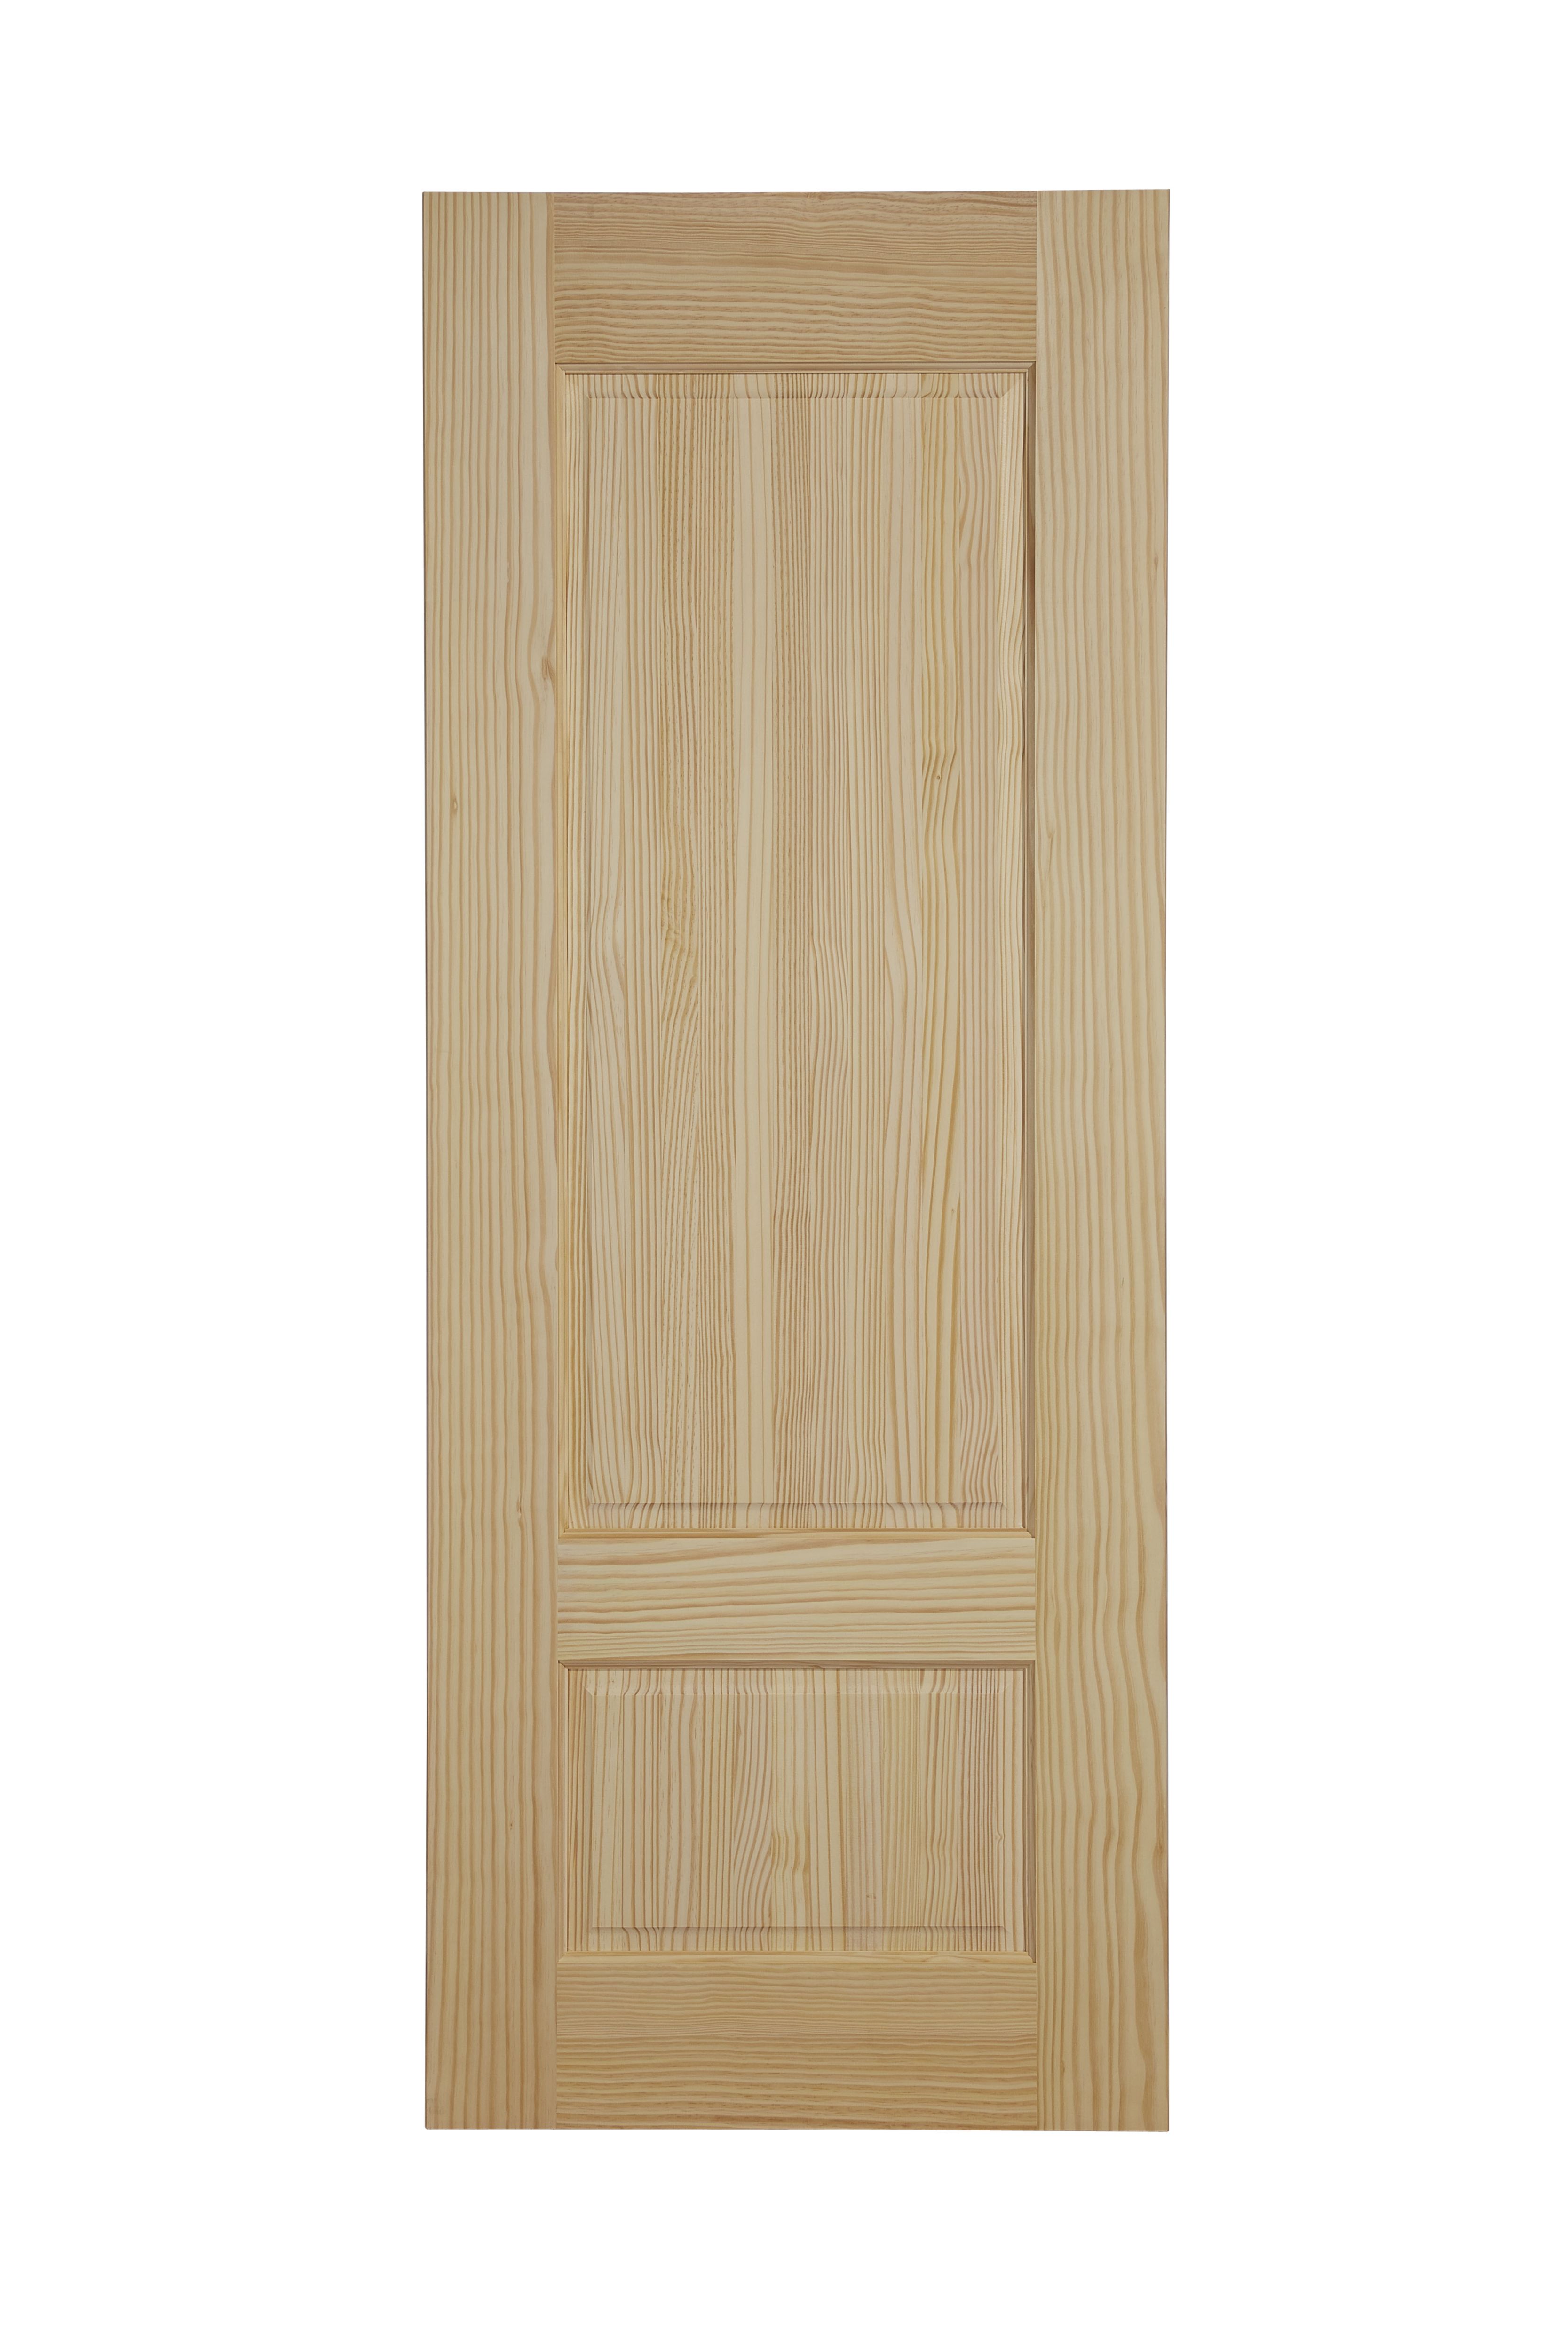 2 panel Unglazed Contemporary Pine veneer Internal Clear pine Door, (H)1981mm (W)686mm (T)35mm